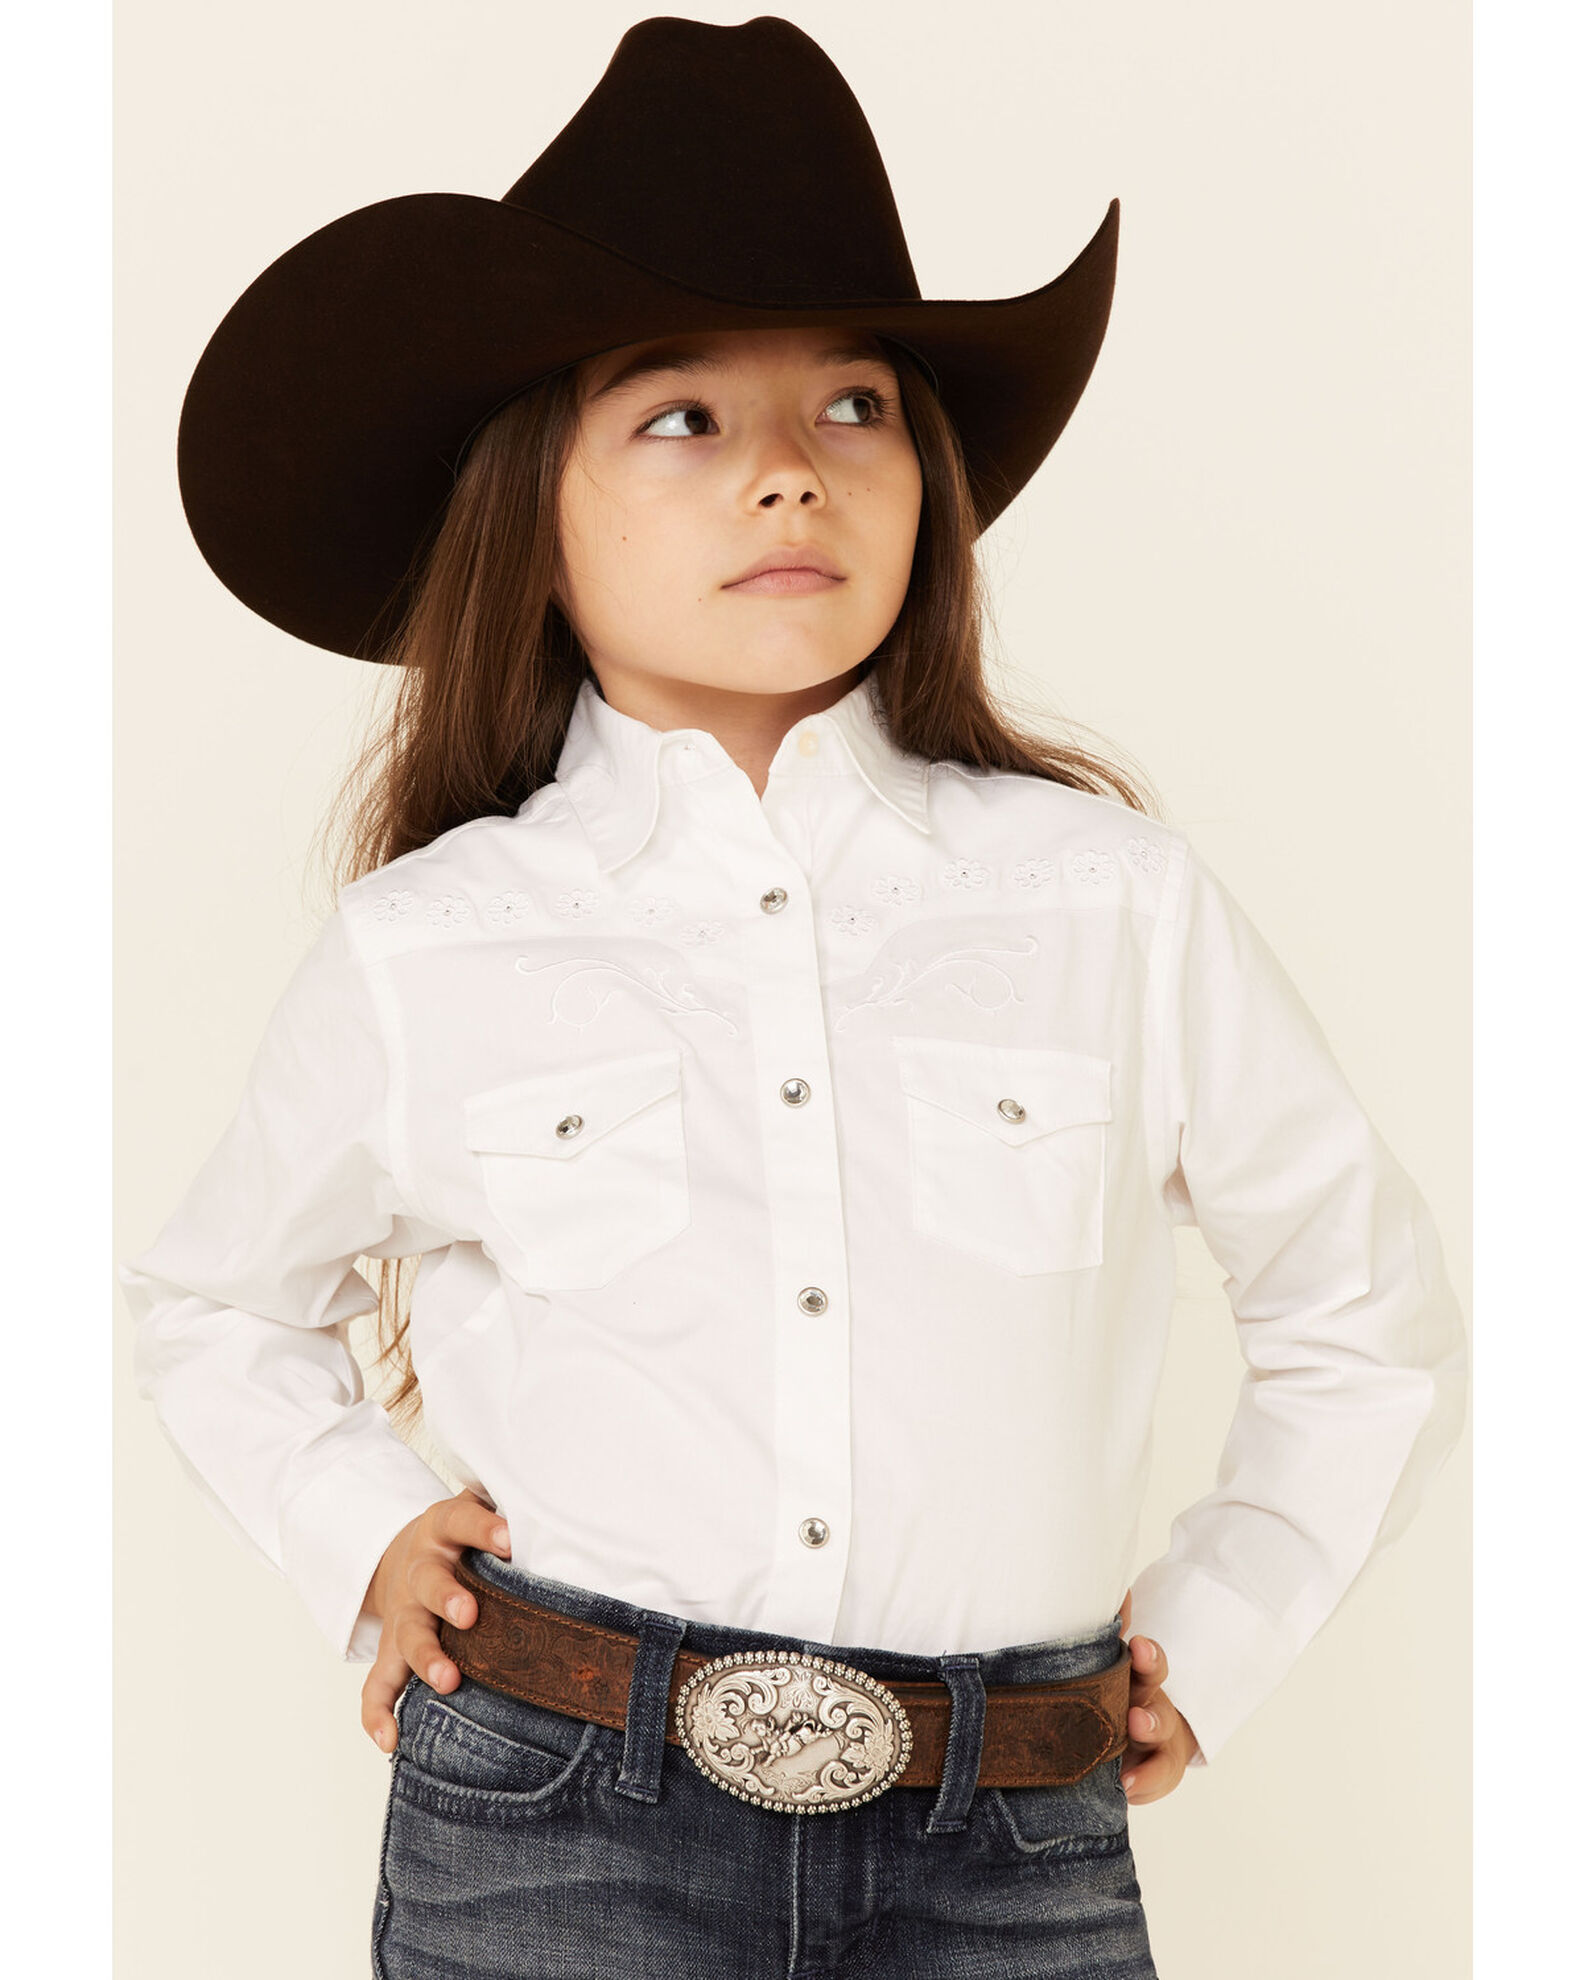 Girls Western Wear: Buy Kids Designer Western Wear for Girls Online